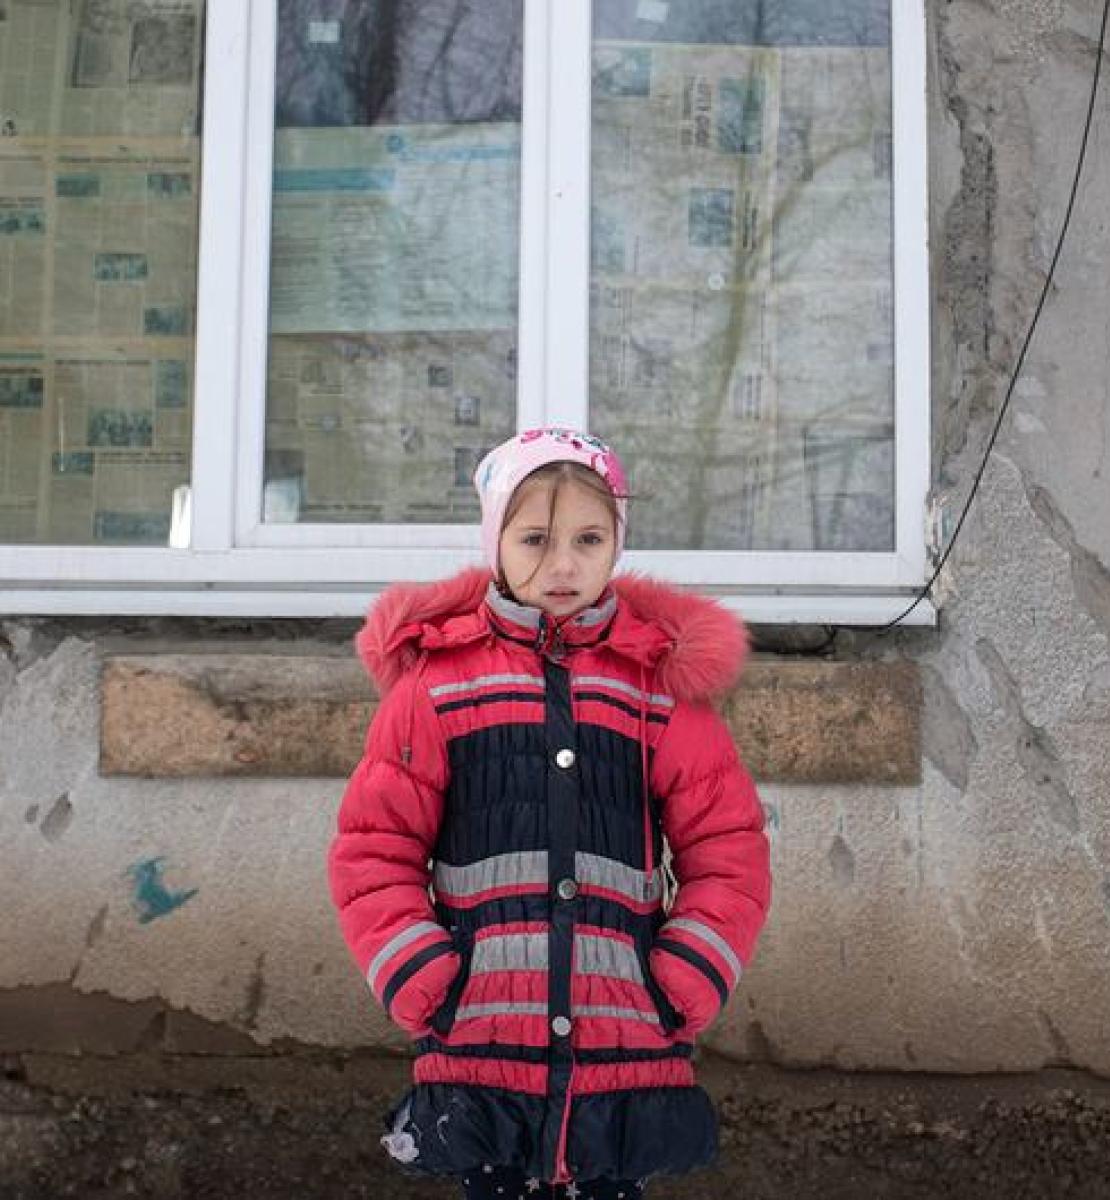 6 февраля 2022 года. Девятилетняя девочка стоит перед разрушенным в результате конфликта фасадом своего дома на востоке Украины.